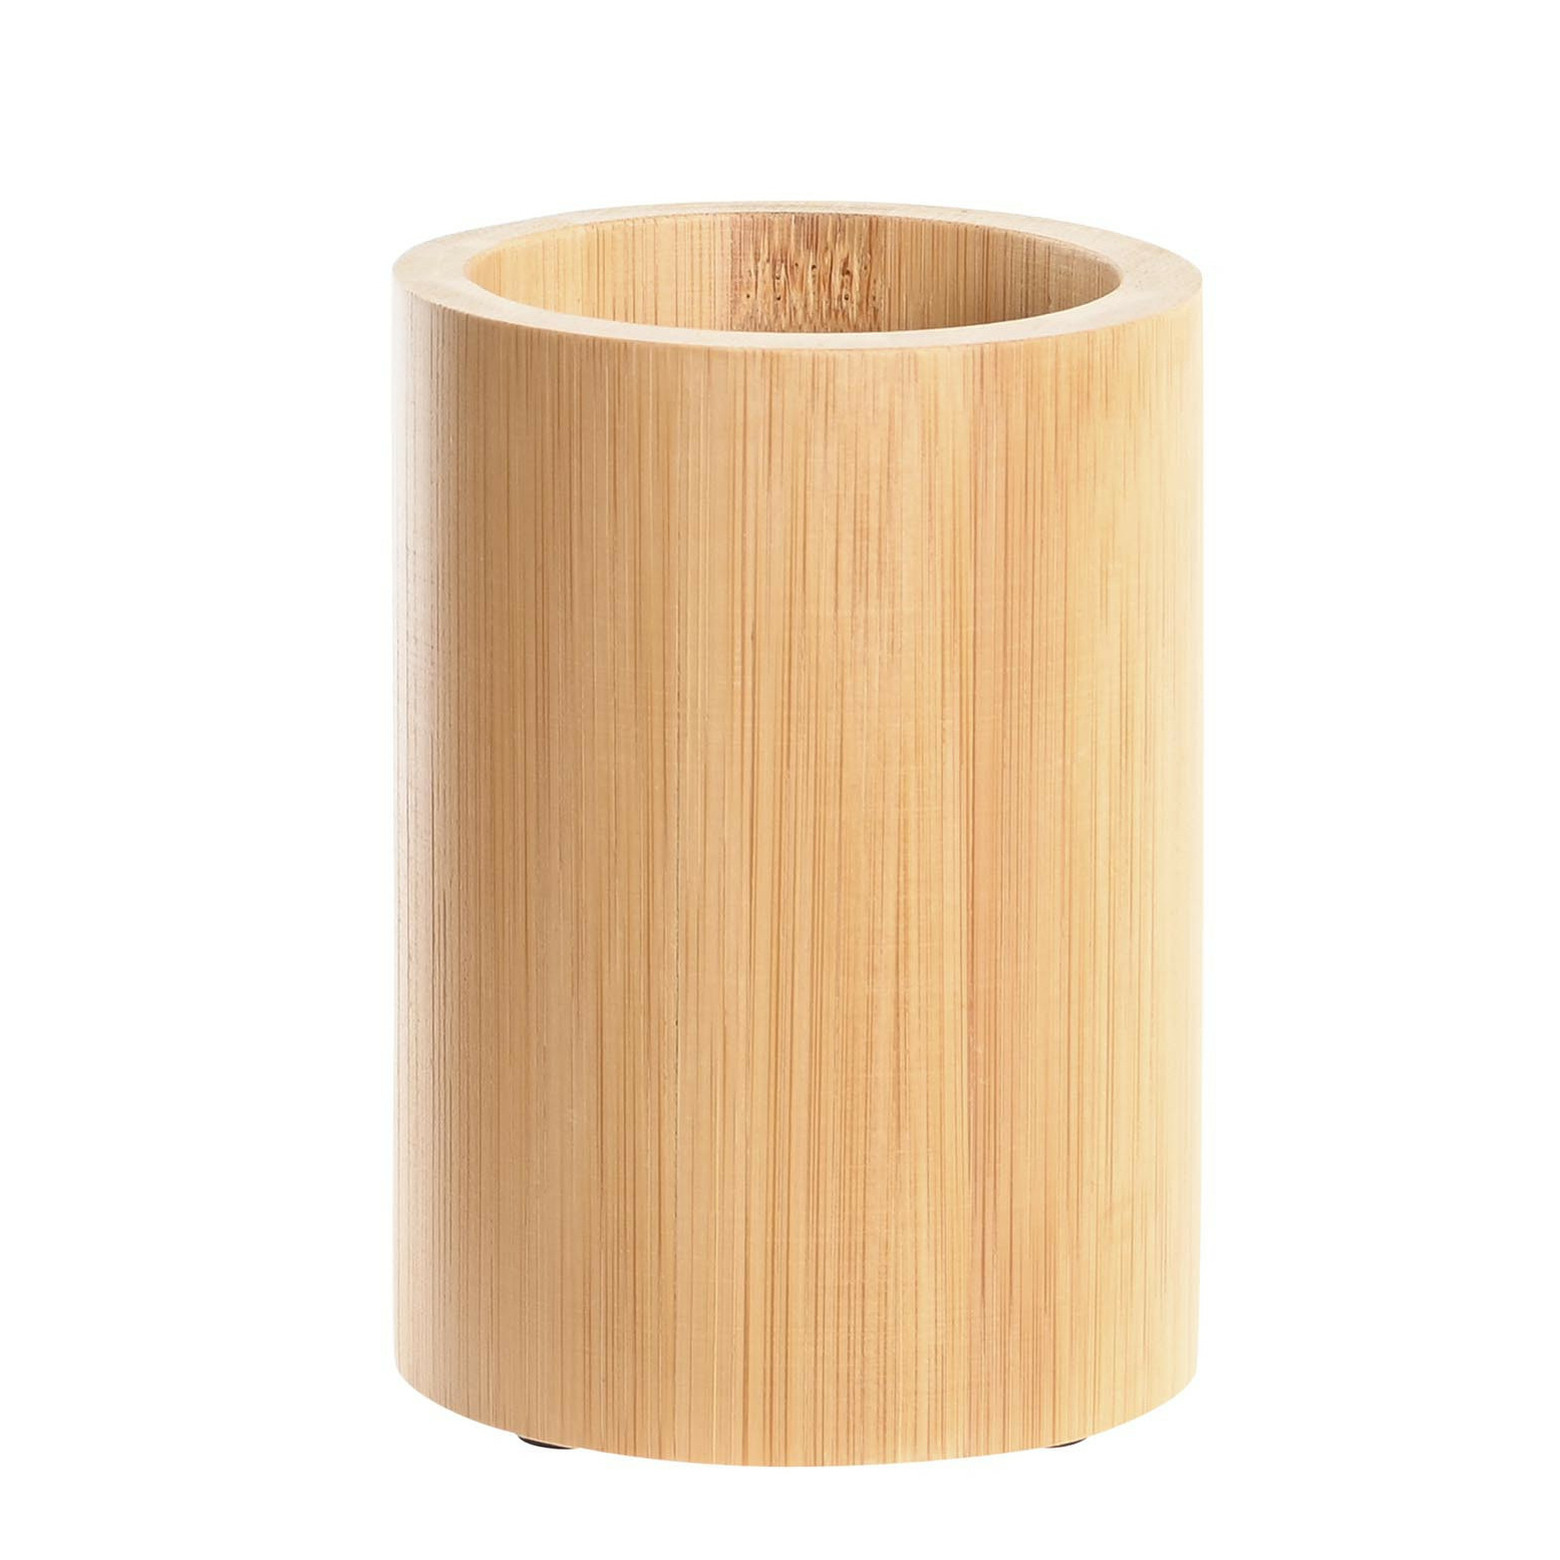 Badkamer tandenborstelhouder-drinkbeker bamboe hout 8 x 11 cm